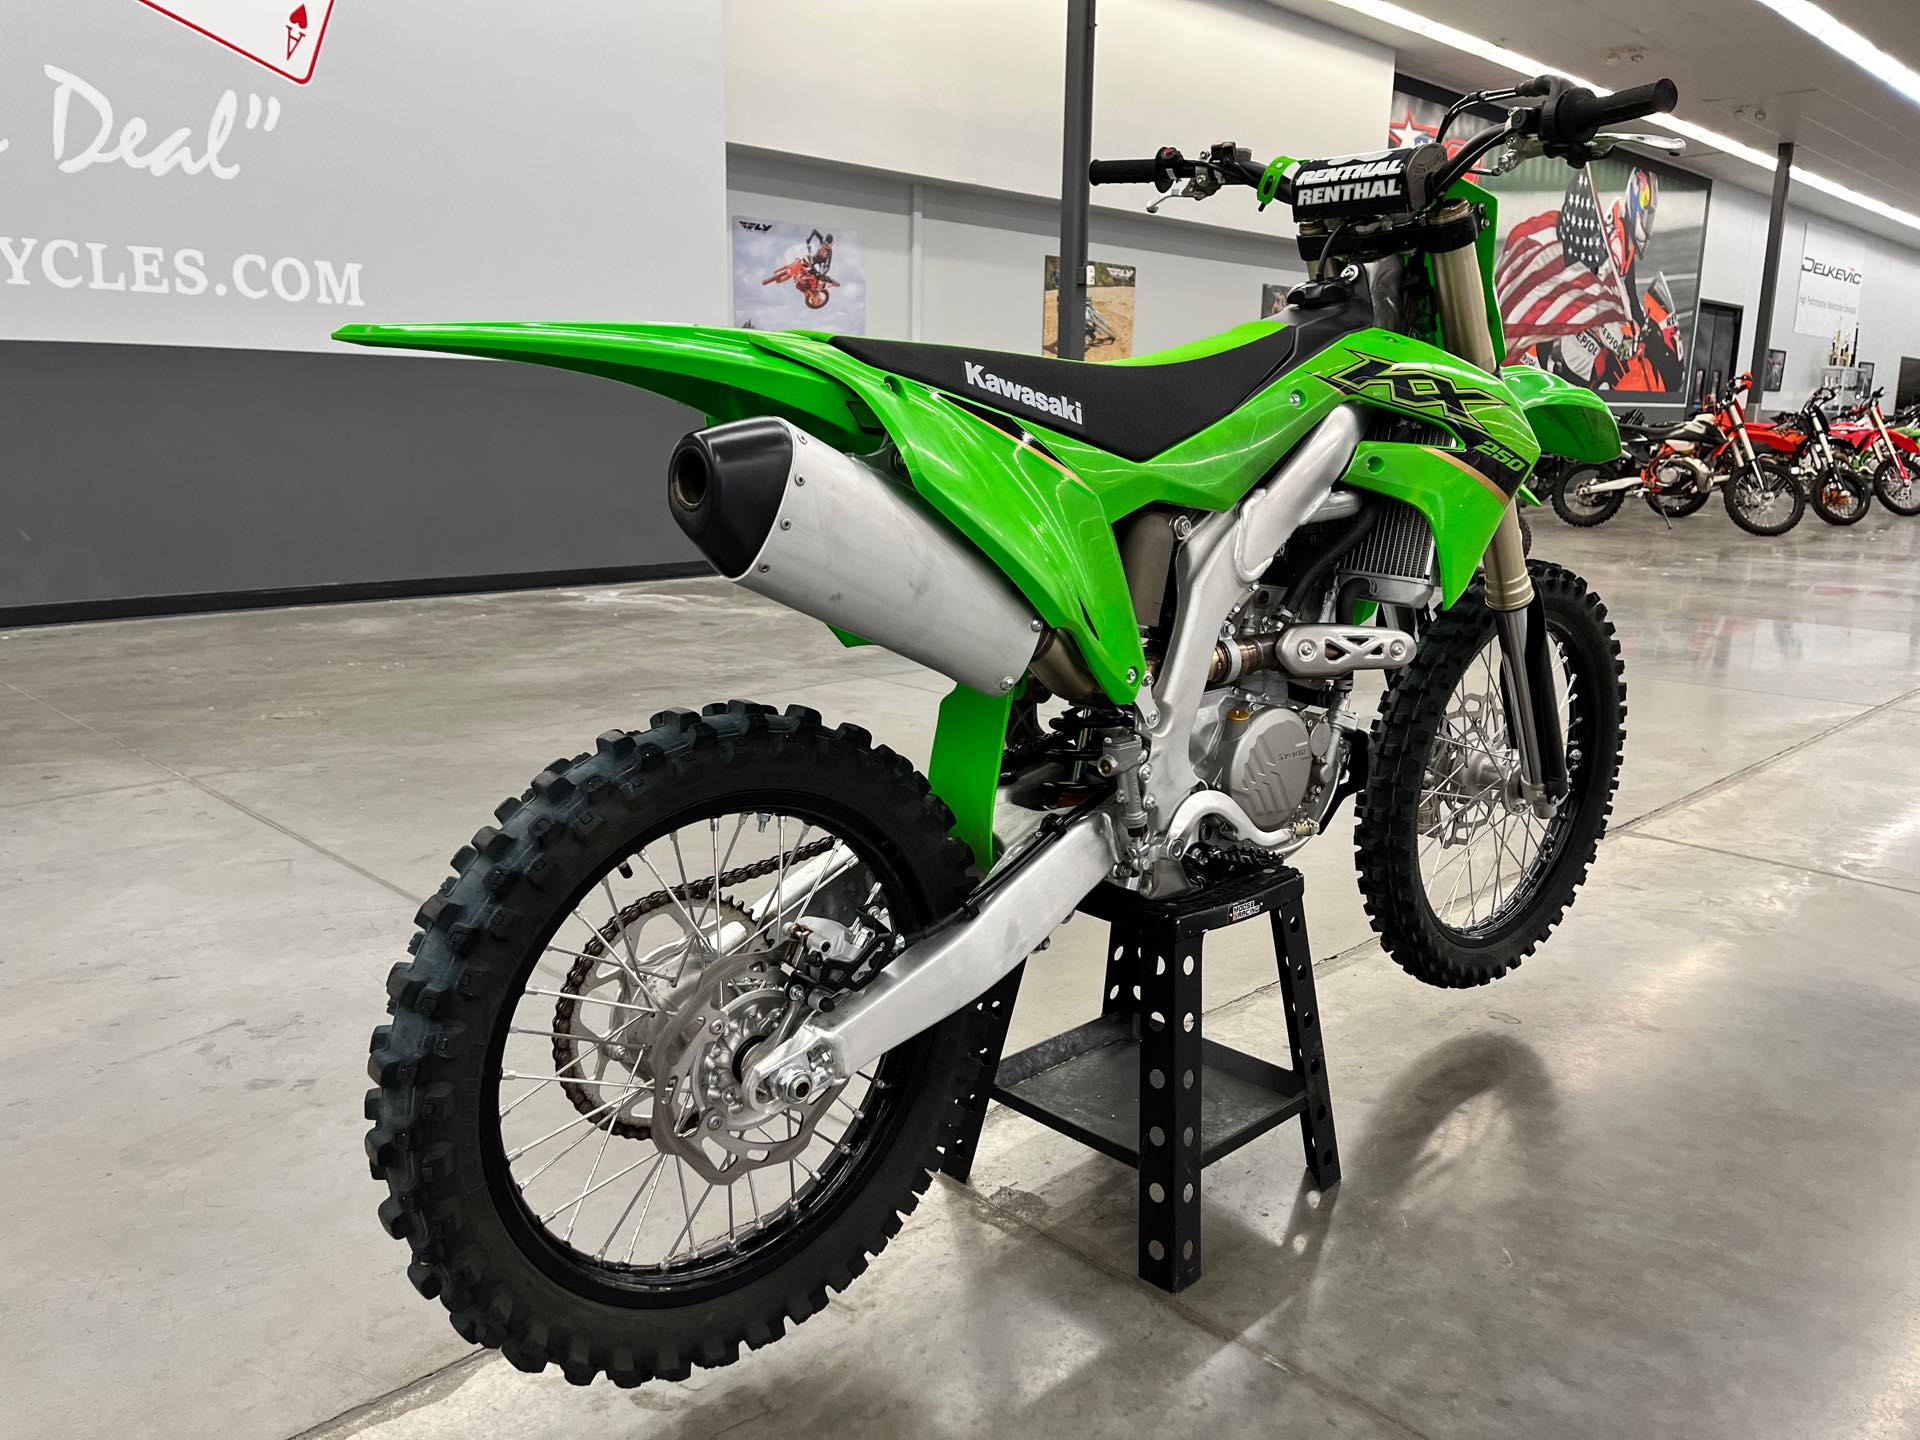 2022 Kawasaki KX 250 at Aces Motorcycles - Denver